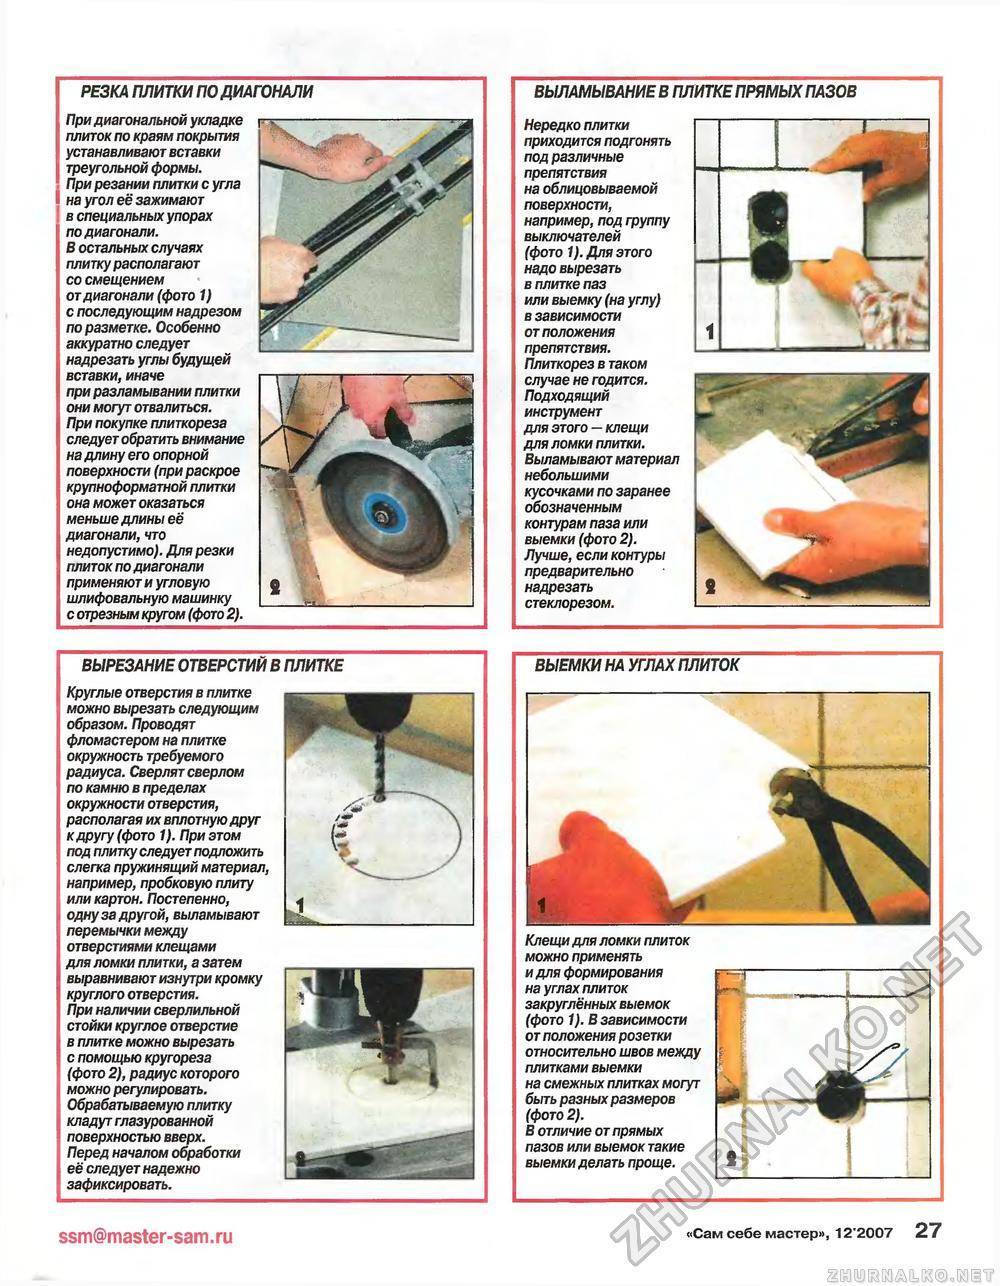 Как вырезать болгаркой круглое отверстие в плитке или металле - Обзор